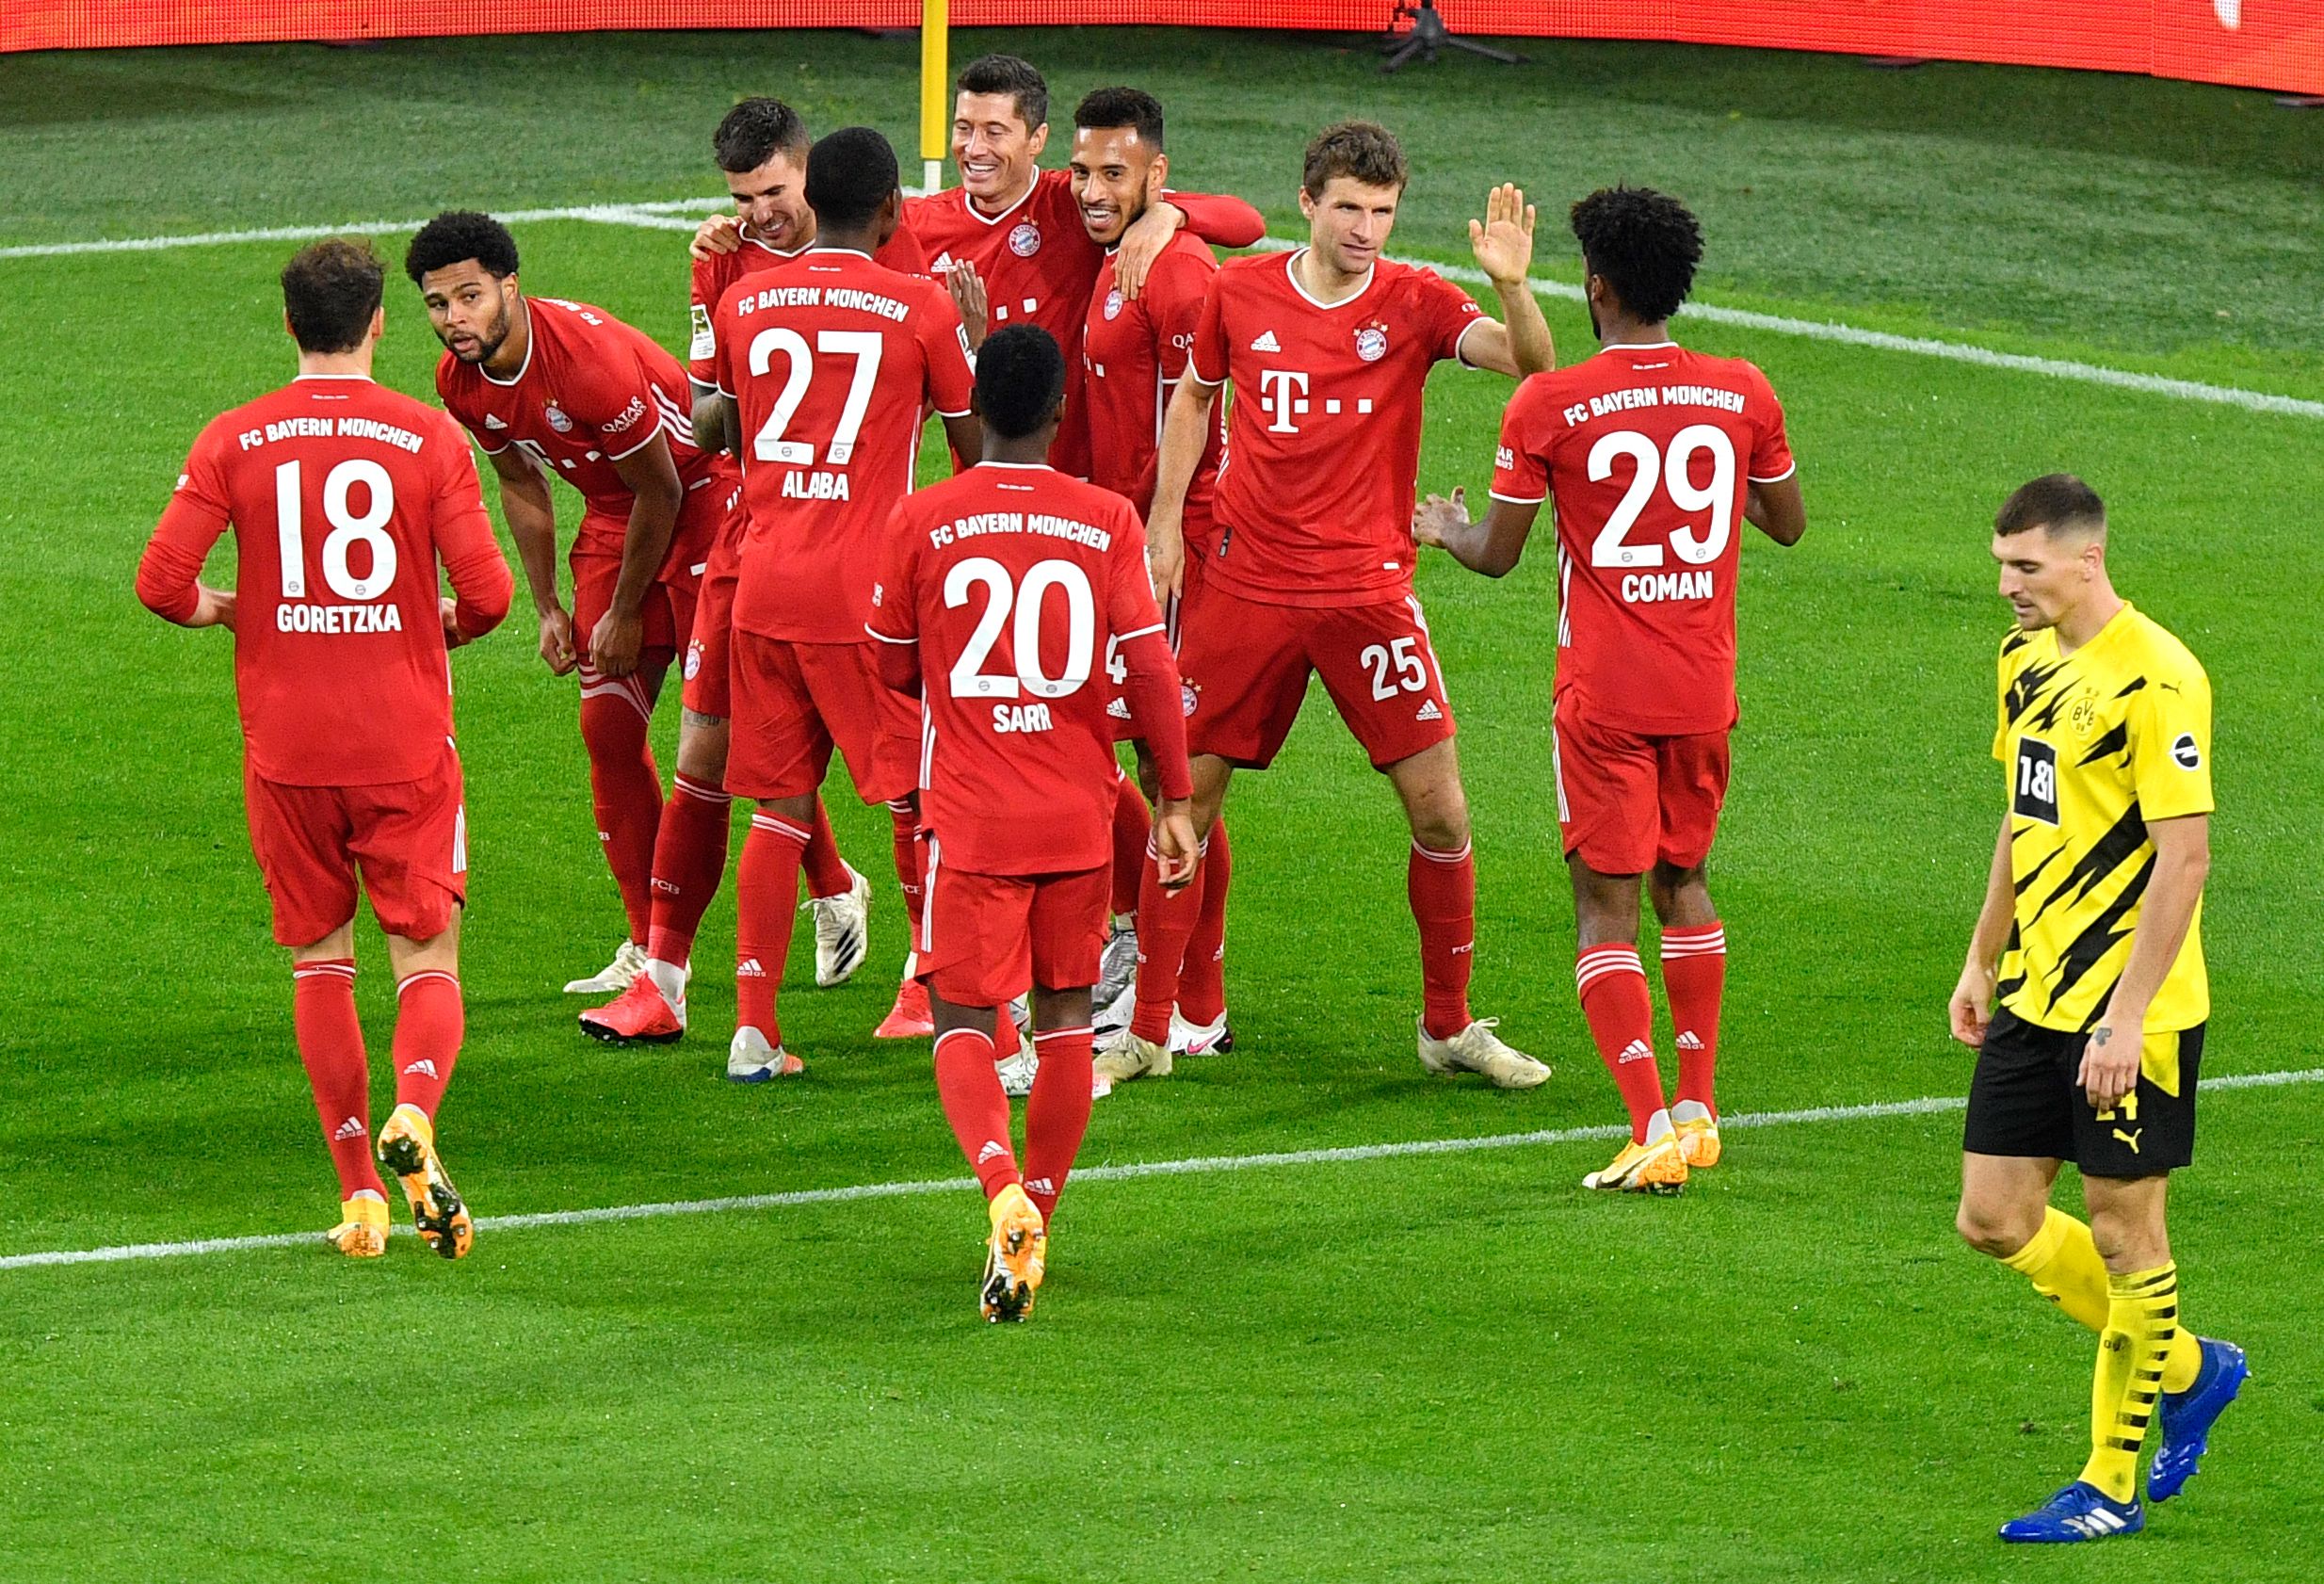 El Bayern Munich vino de atrás y remontó el marcador para quedarse con la victoria de visita ante el Borussia Dortmund. Lewandowski fue uno de los anotadores. (Foto Prensa Libre: AFP)